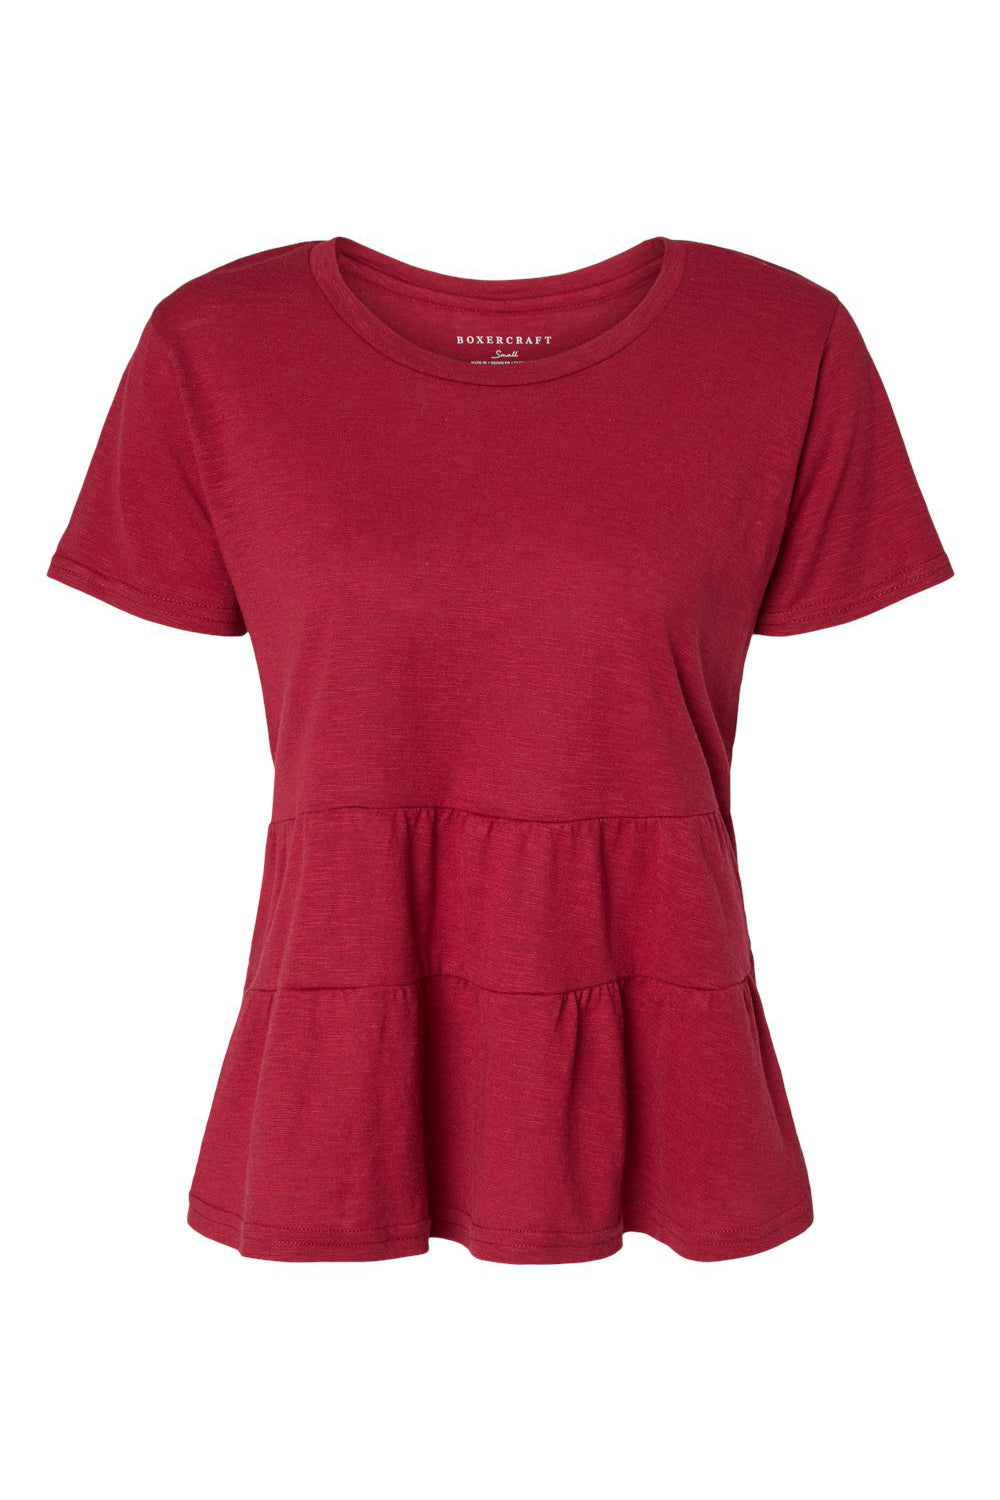 Boxercraft BW2401 Womens Willow Short Sleeve Crewneck T-Shirt Garnet Red Flat Front